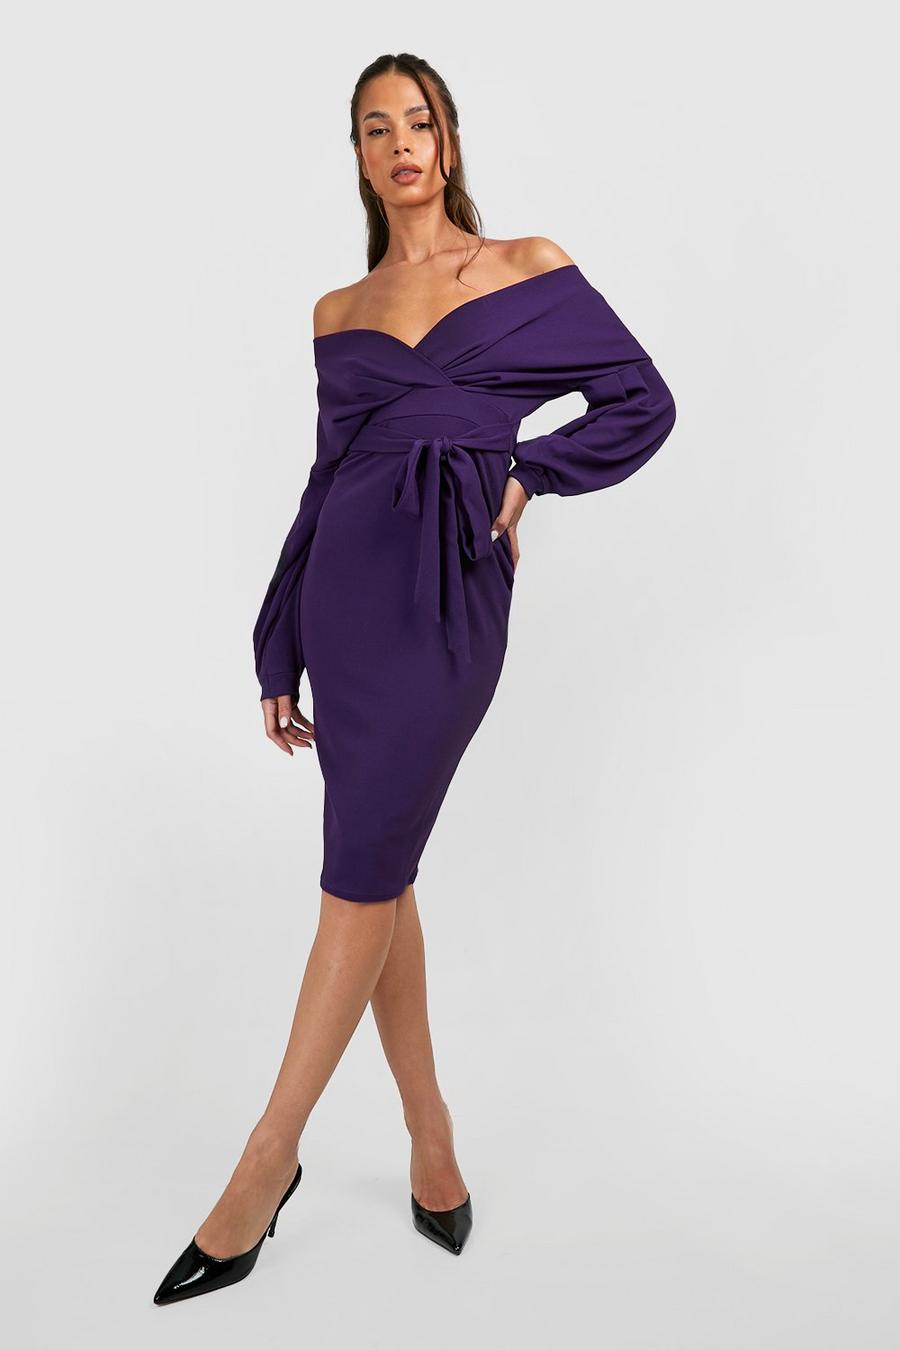 Jewel purple Knälång off shoulder-klänning med omlott